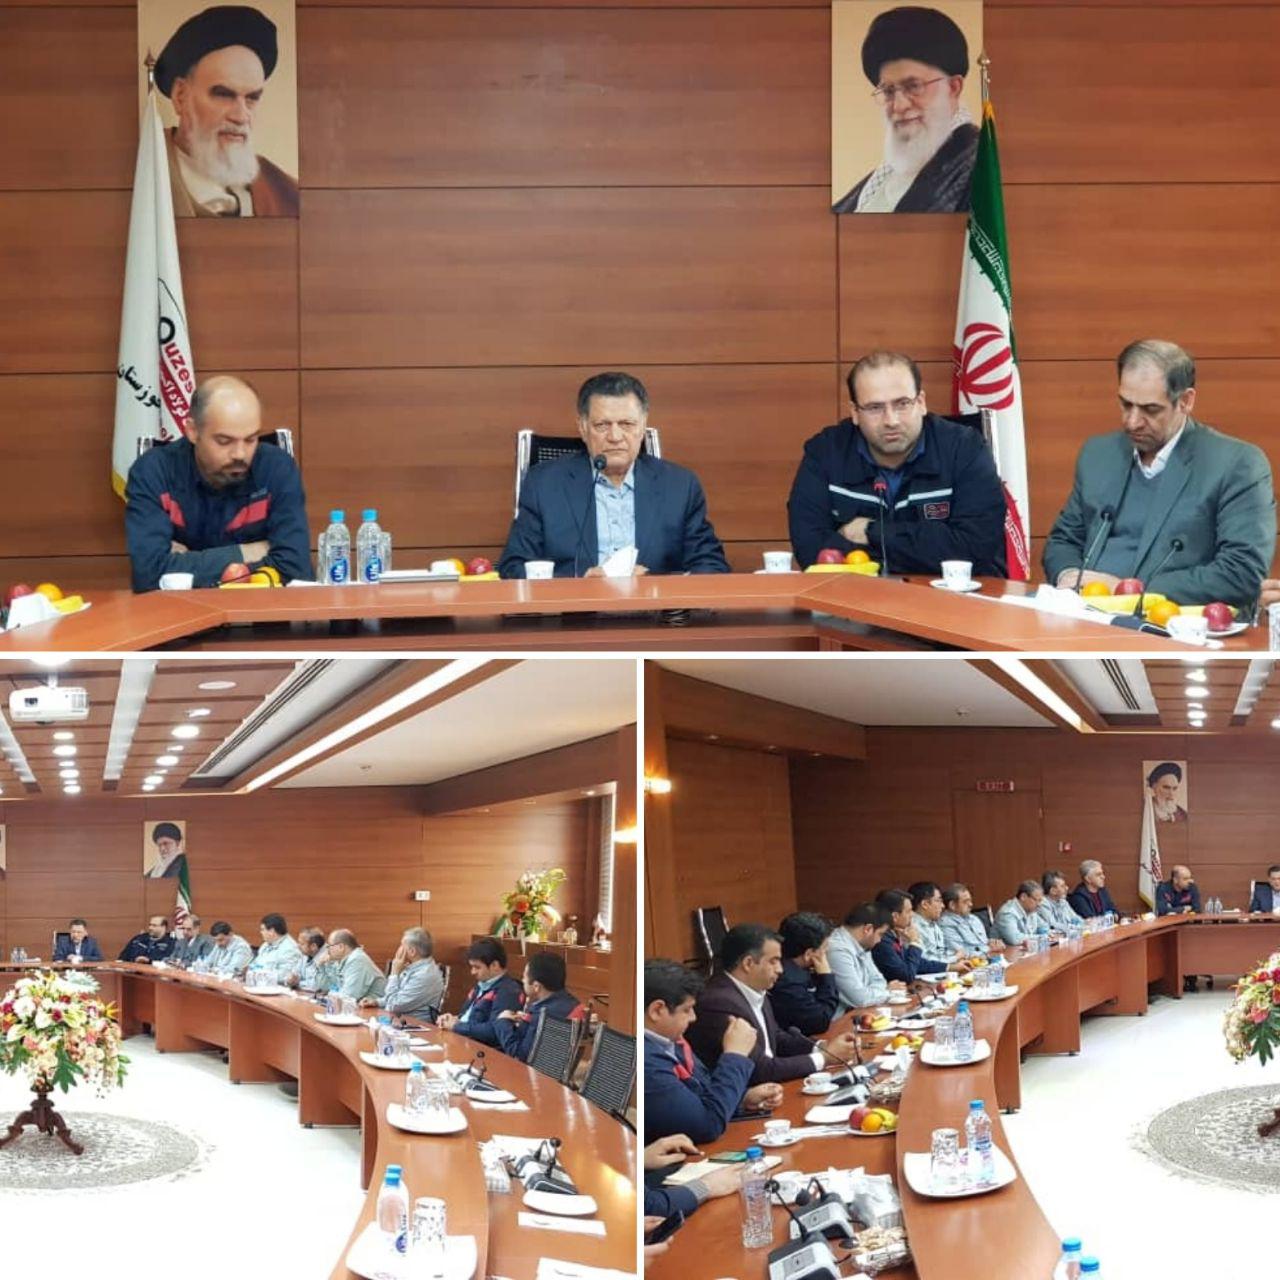 جلسات مشترک فولاد اکسین و فولاد خوزستان در راستای تبادل دانش صادراتی، تولید، اشتغالزای و تکنولوژی تشکیل می شود